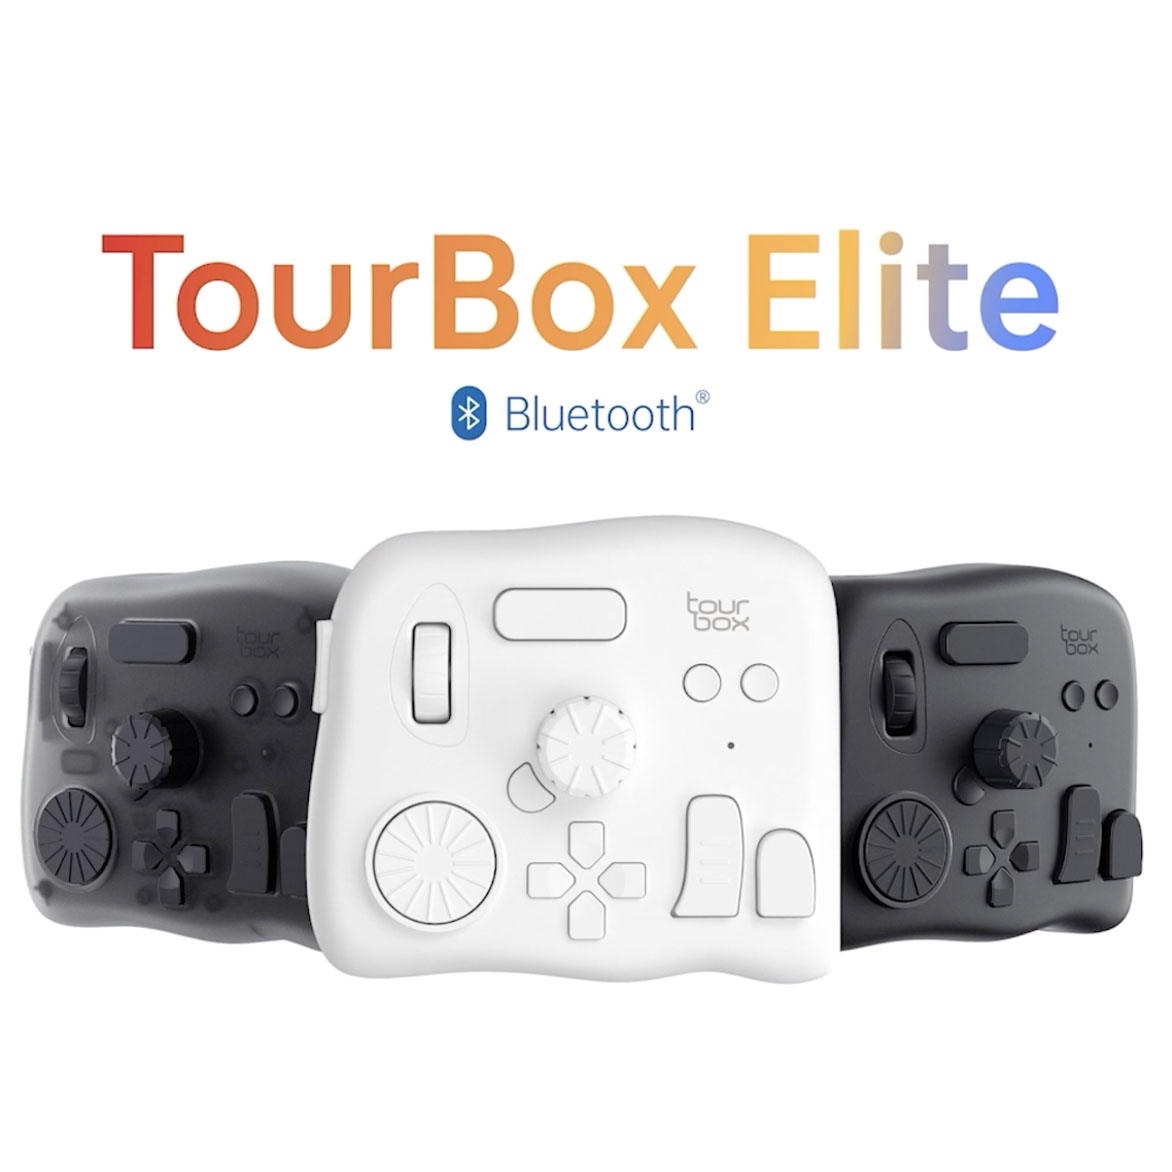 イラスト・動画制作、画像編集に便利な左手用デバイス「TourBox Elite